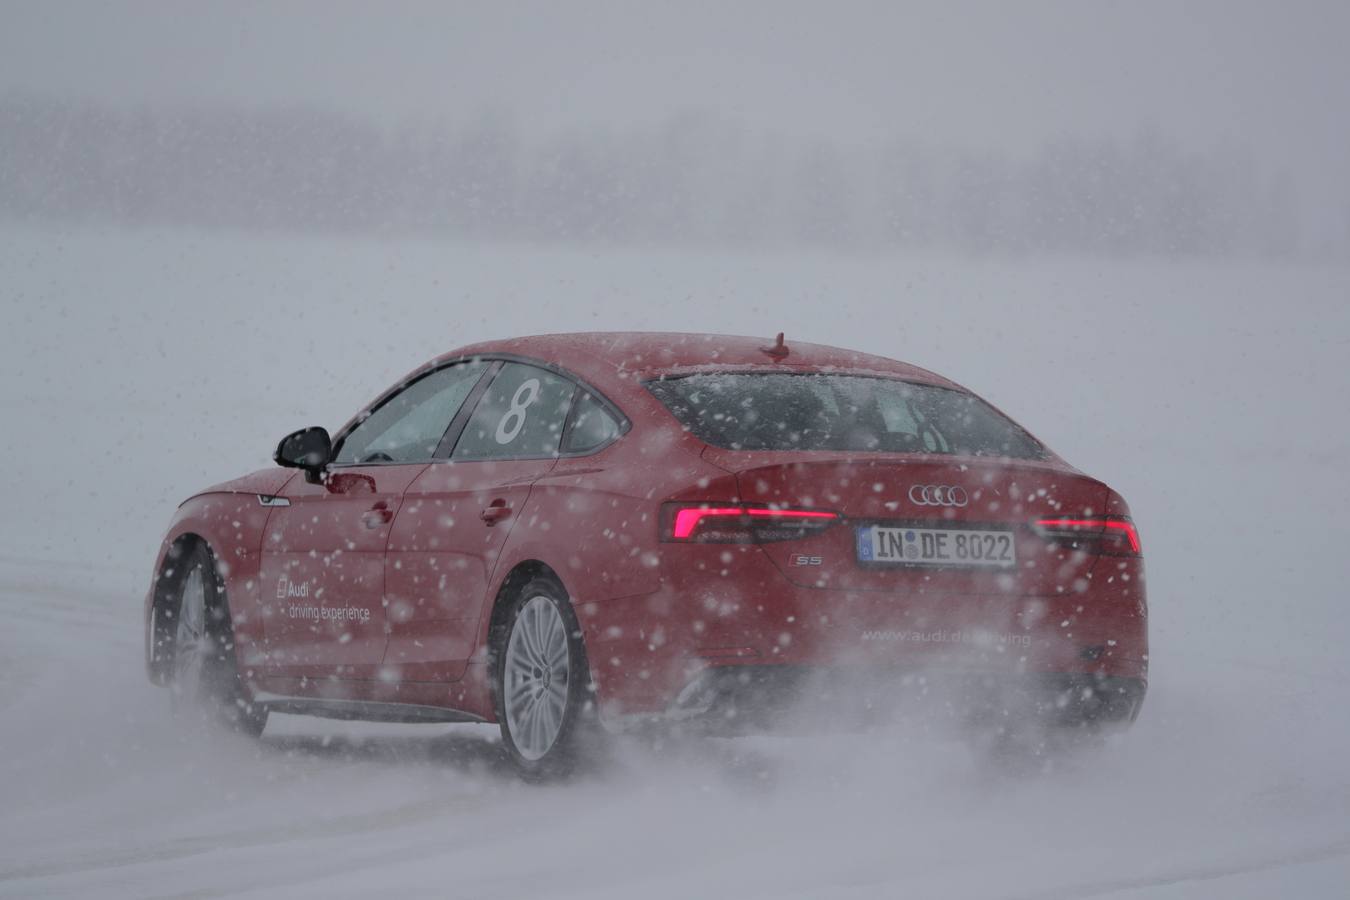 Uno de los mejores cursos de conducción que se pueden realizar en invierno es el 'Audi ice experience'. Una experiencia recomendable que nos ayuda a afrontar con seguridad las peores condiciones de adherencia en carretera.